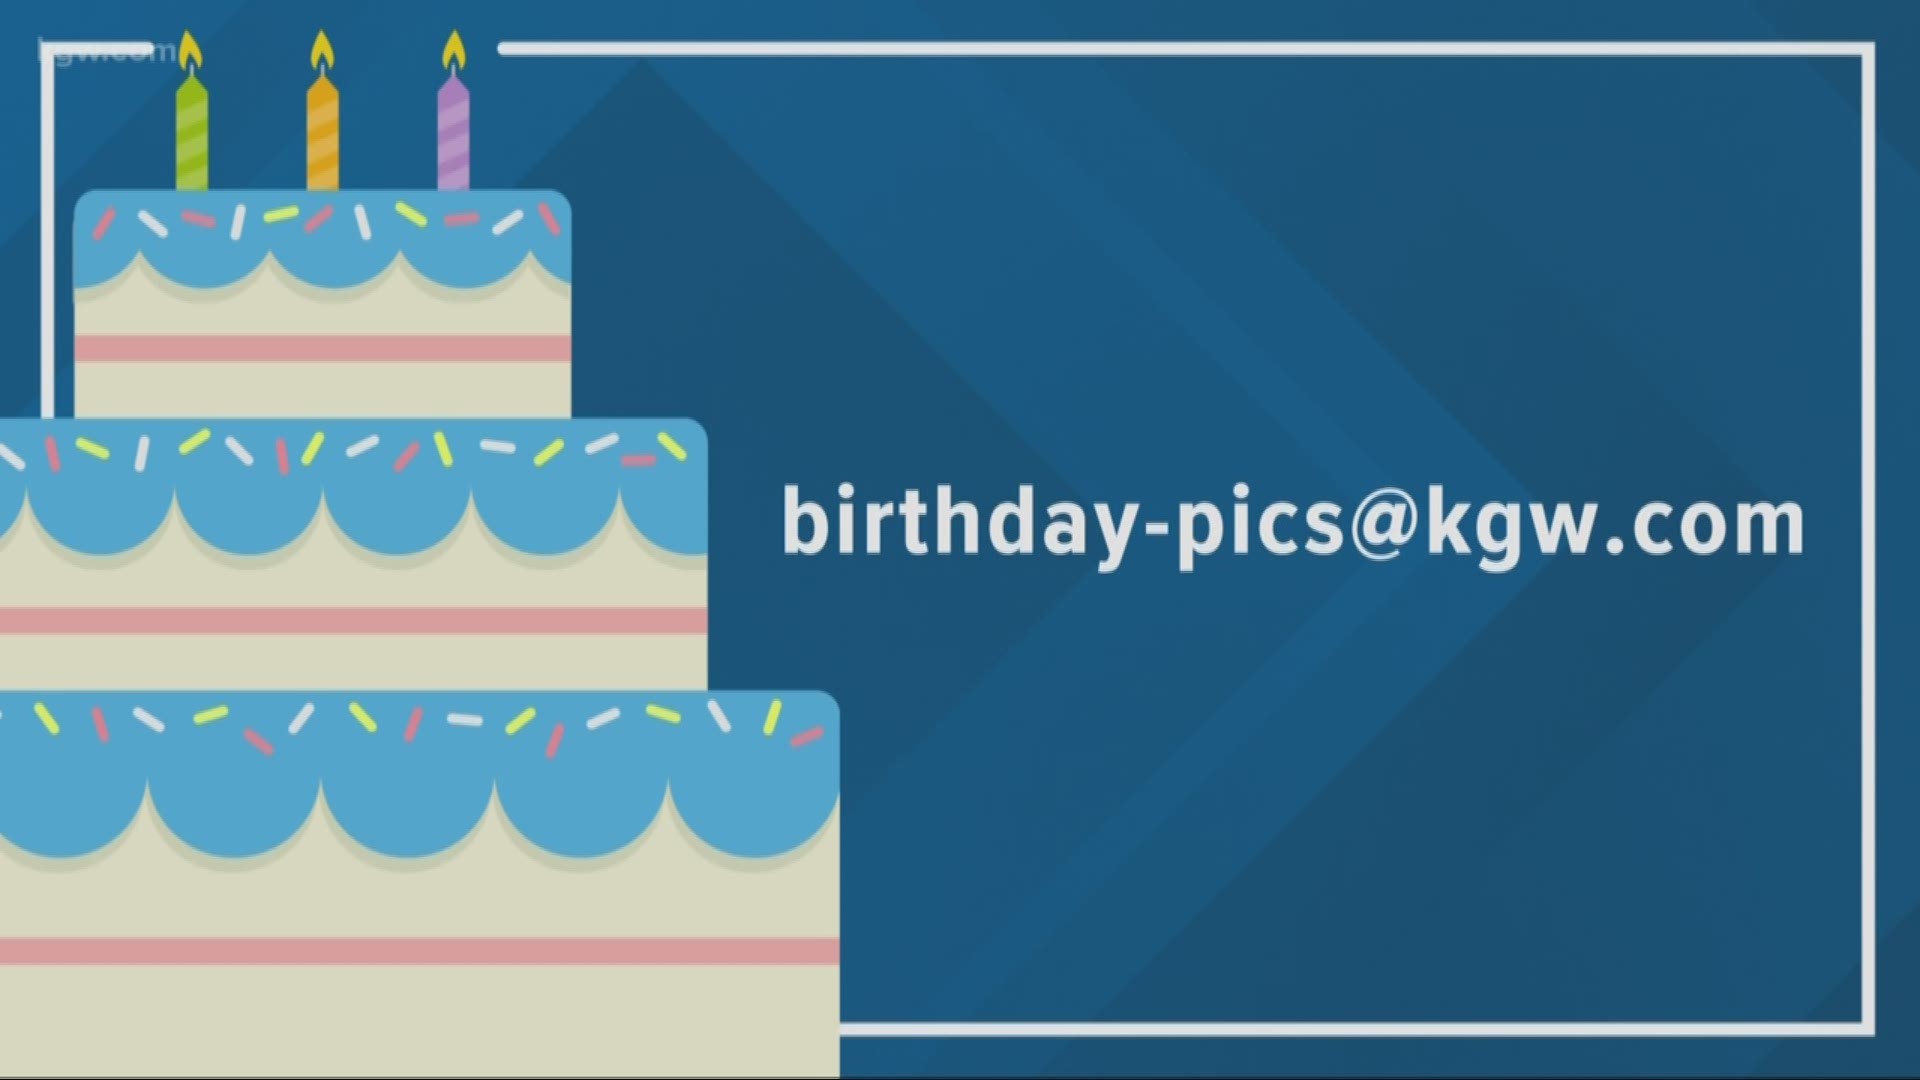 KGW viewer birthdays: 12-4-18